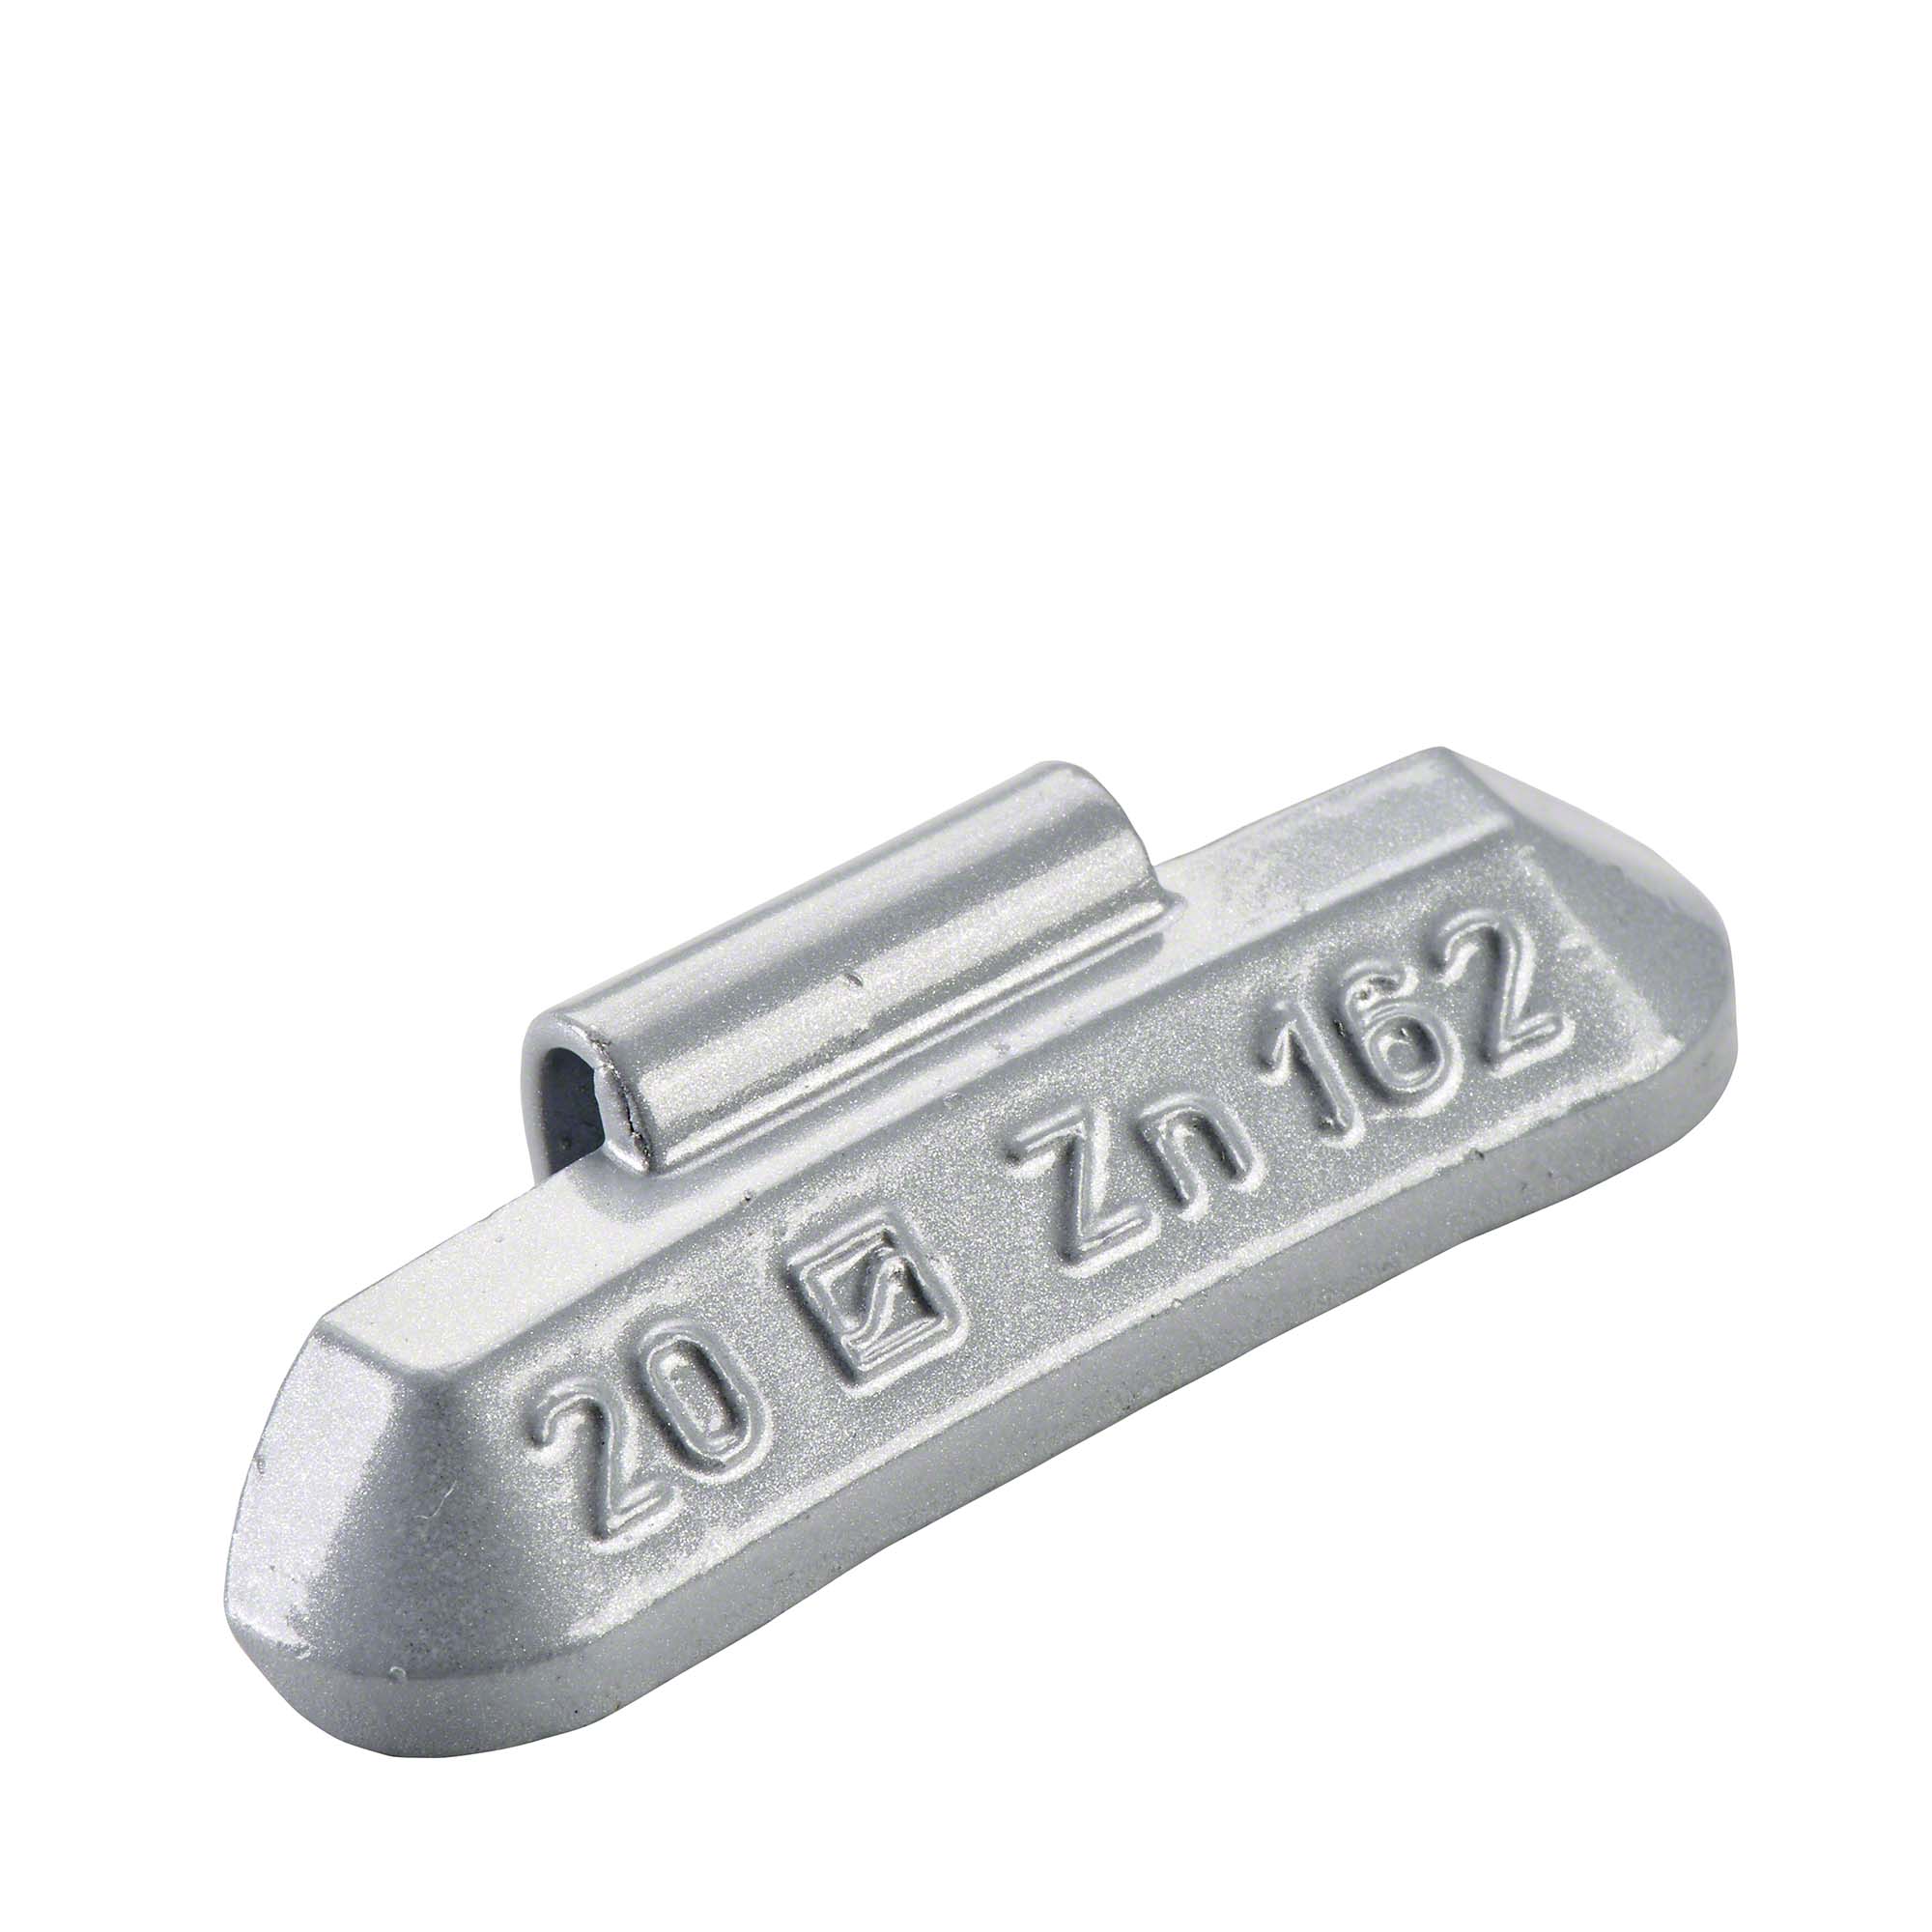 HOFMANN POWER WEIGHT-Schlaggewicht - Typ 162, 20 g, Zink, Silber-5162-0200-001